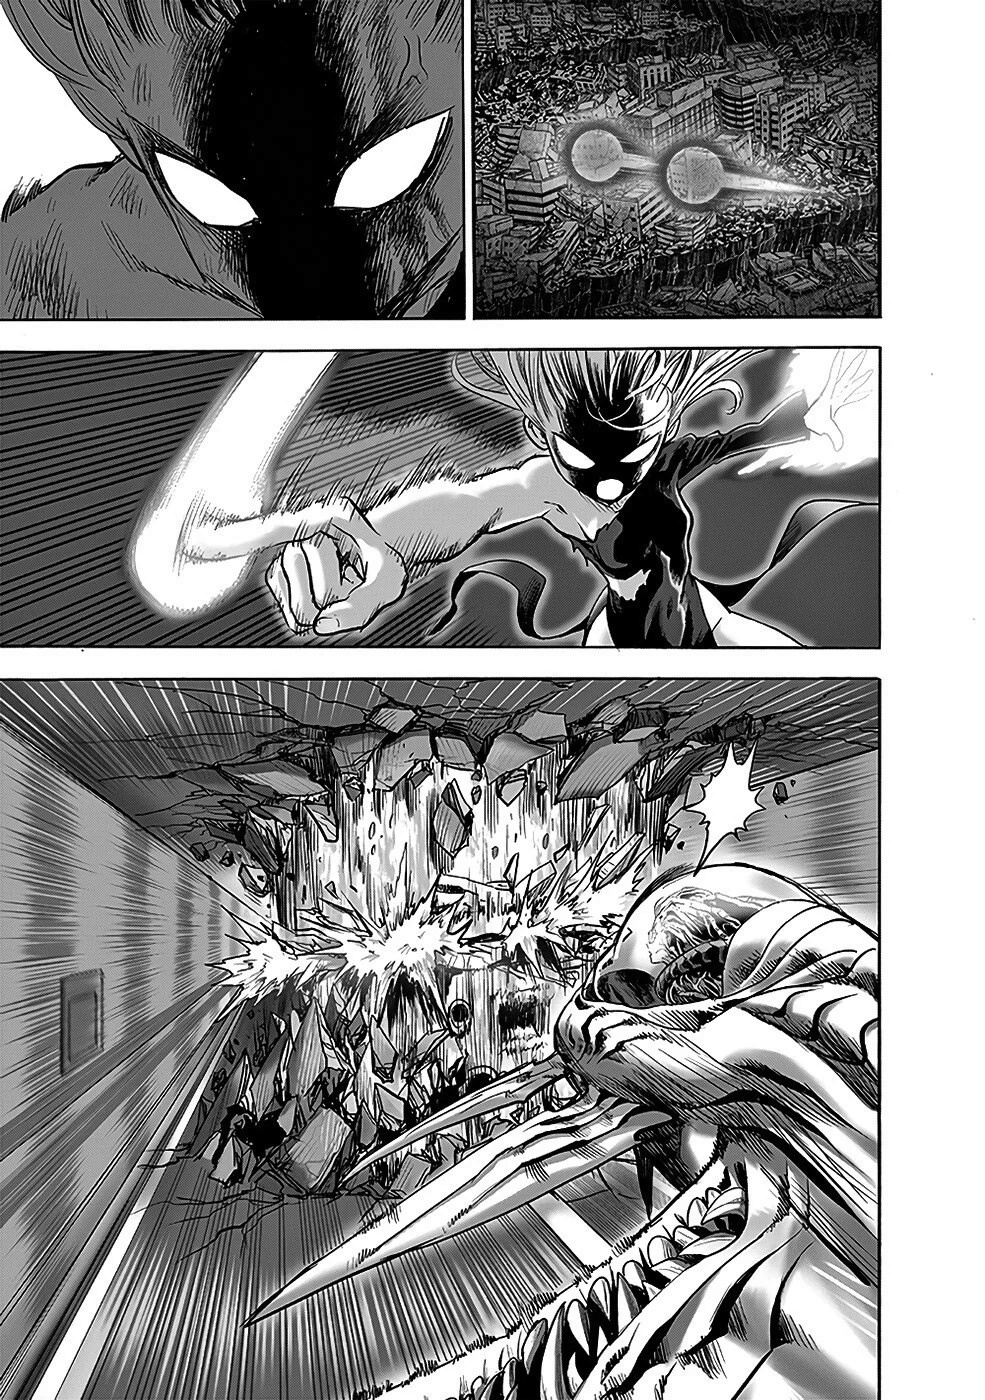 Quem no universo de Naruto seria capaz de derrotar Tatsumaki? - Página 5 28_web10